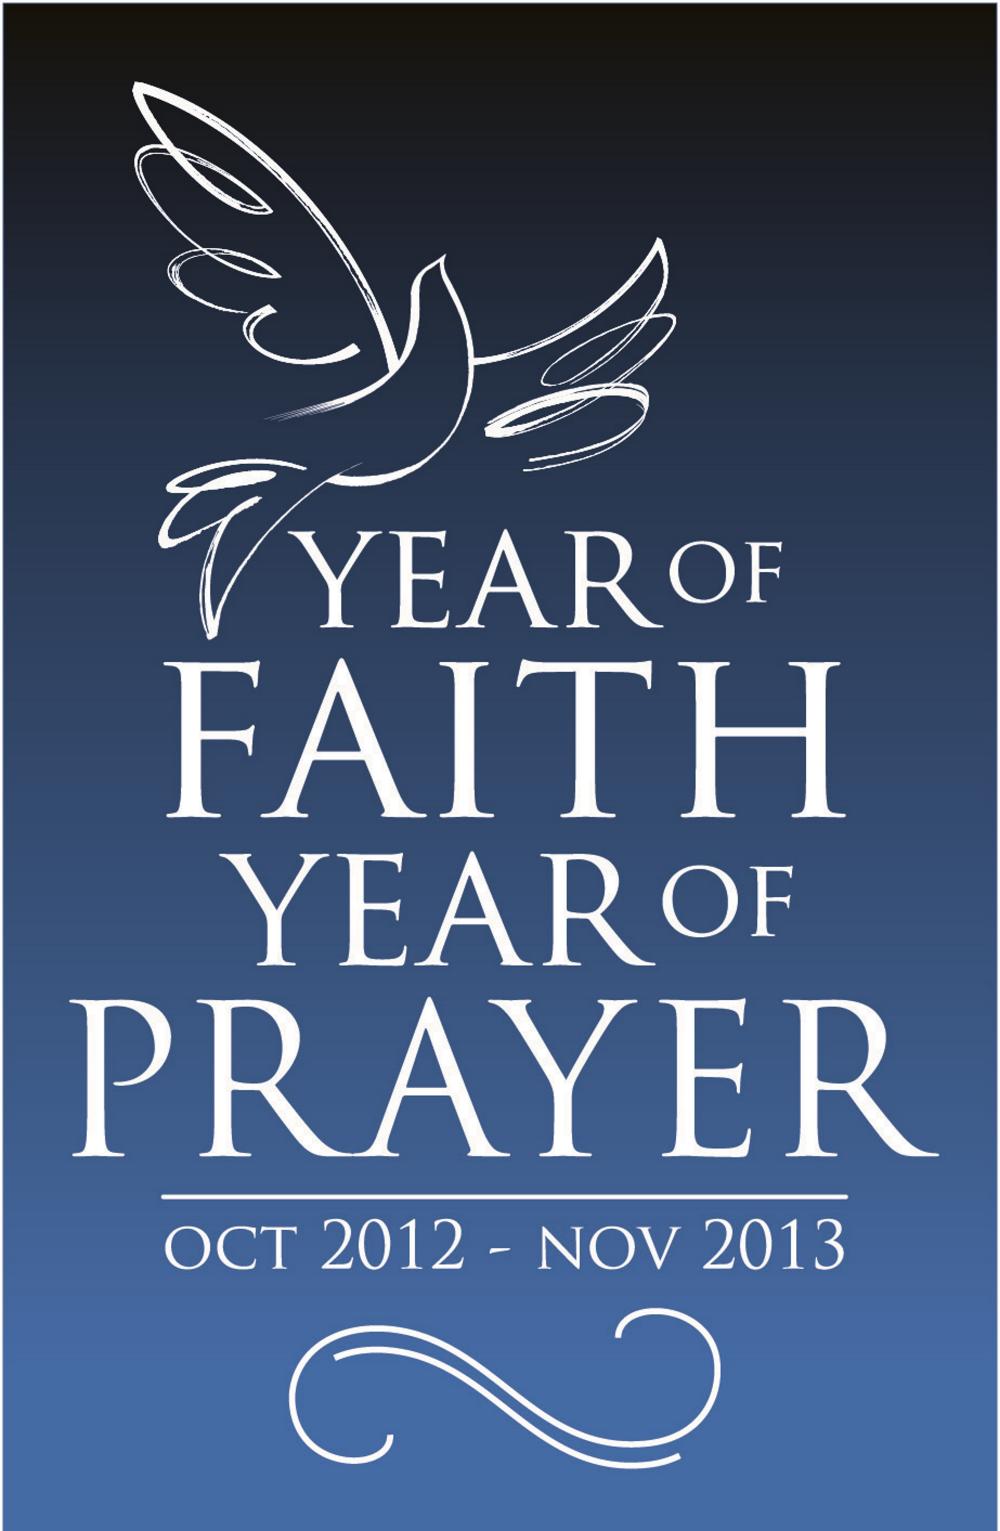 A year of faith, a year of prayer